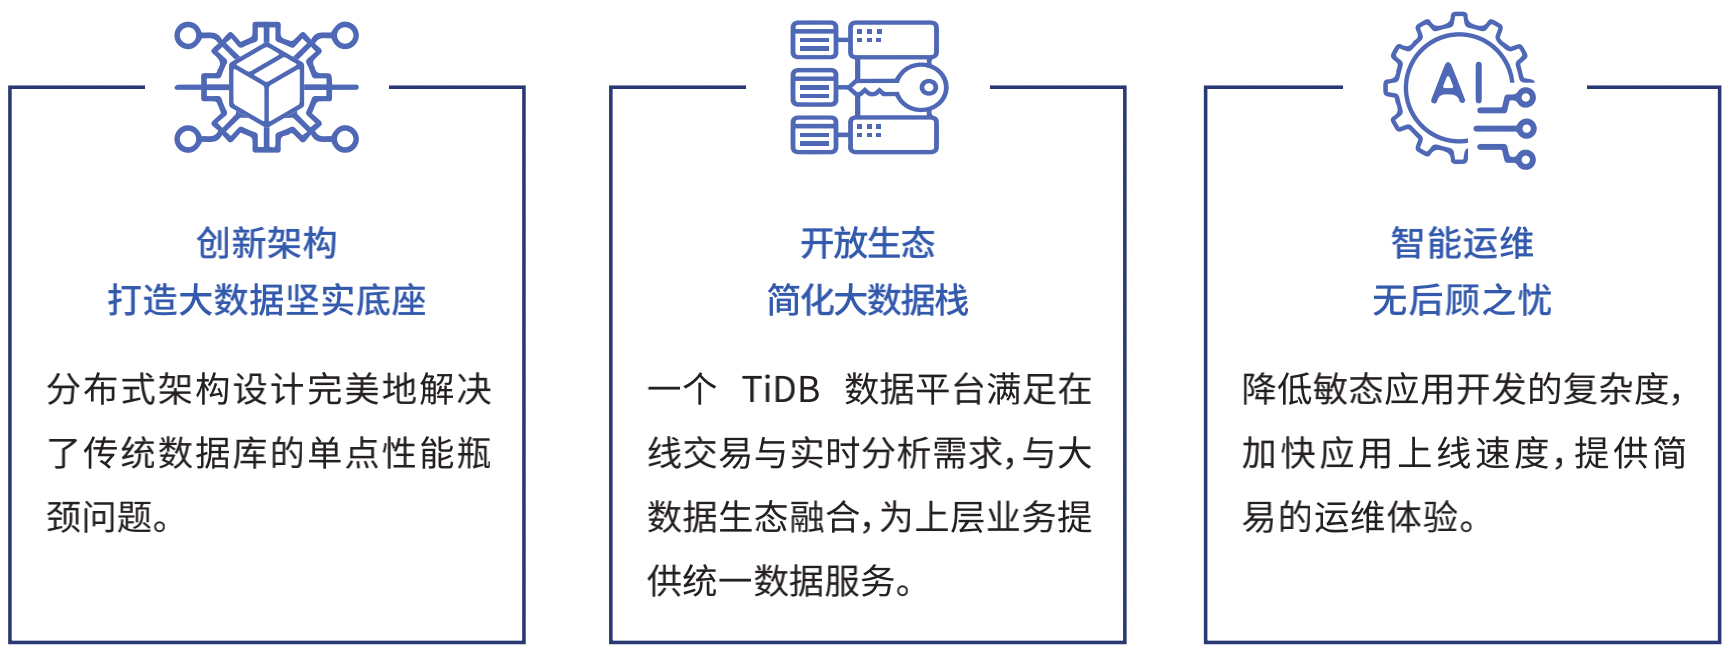 烟台税务TiDB应用成果.png